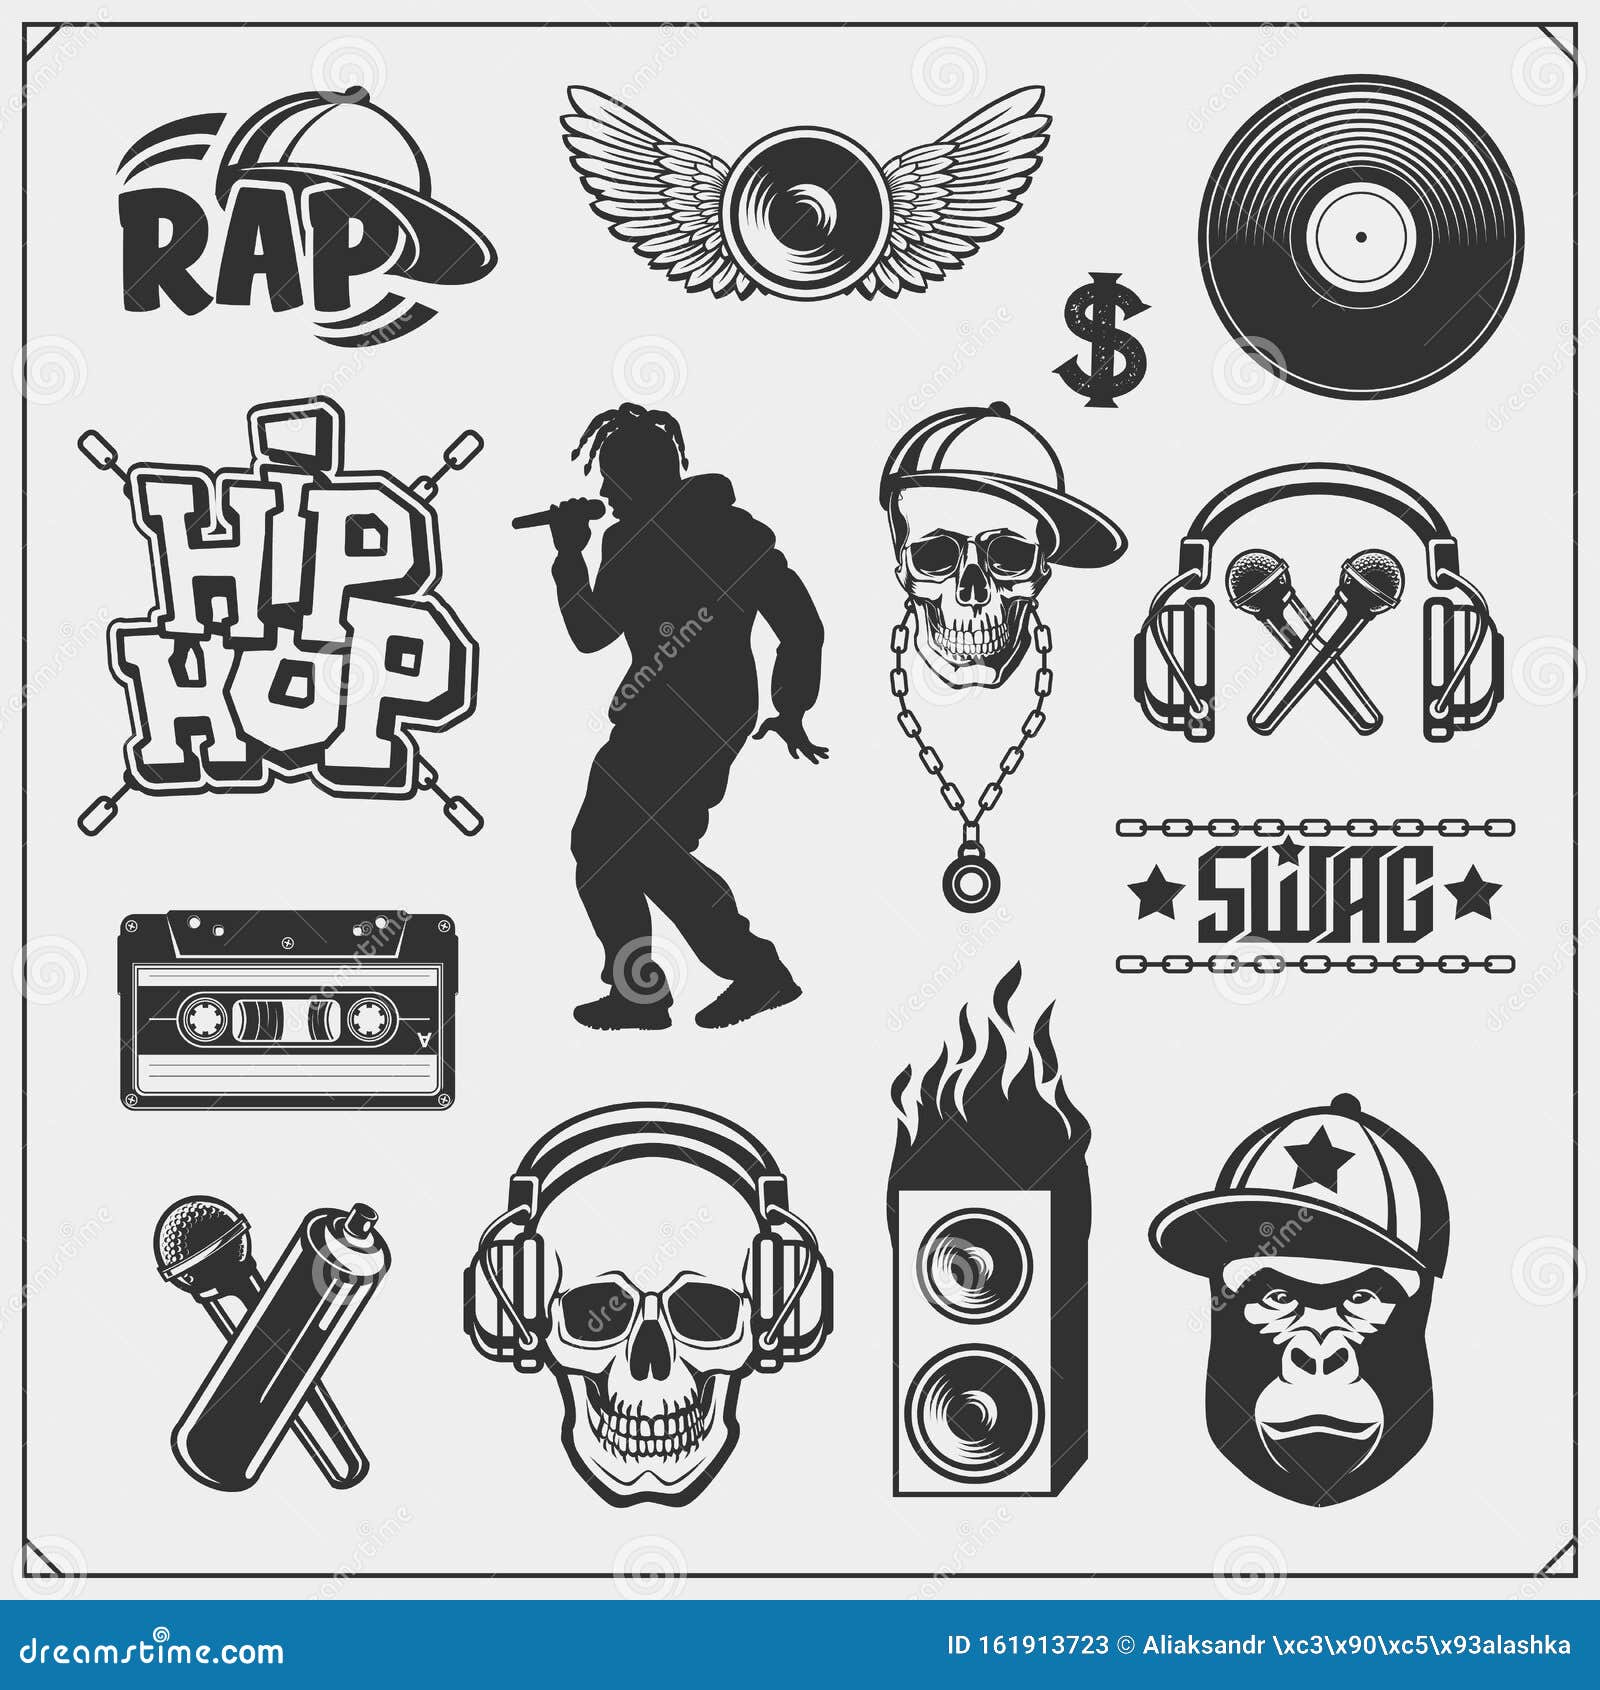 rap logo ideas 4